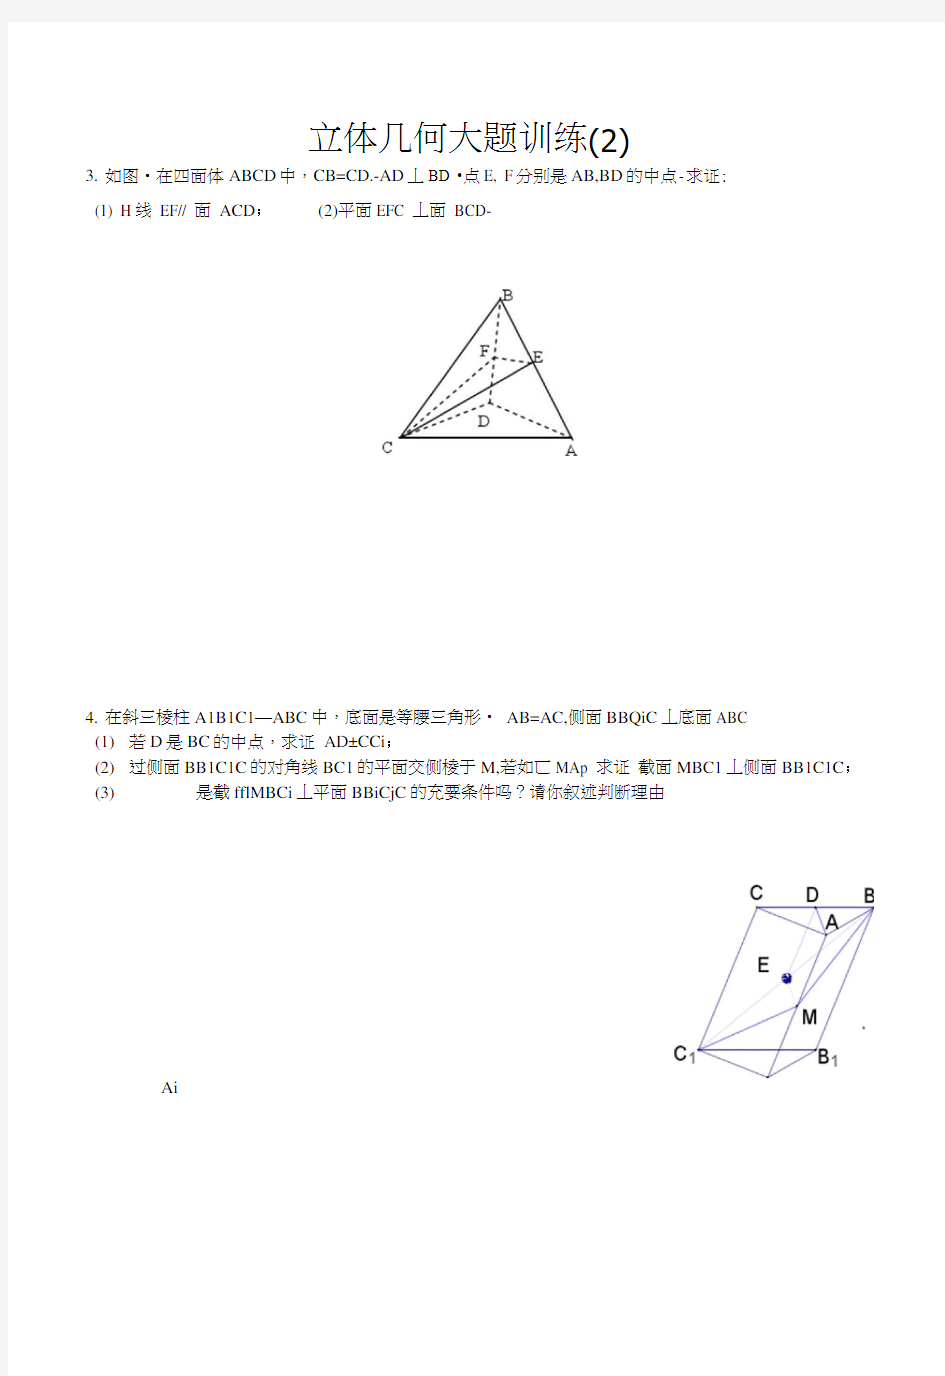 立体几何经典大题(各个类型的典型题目)